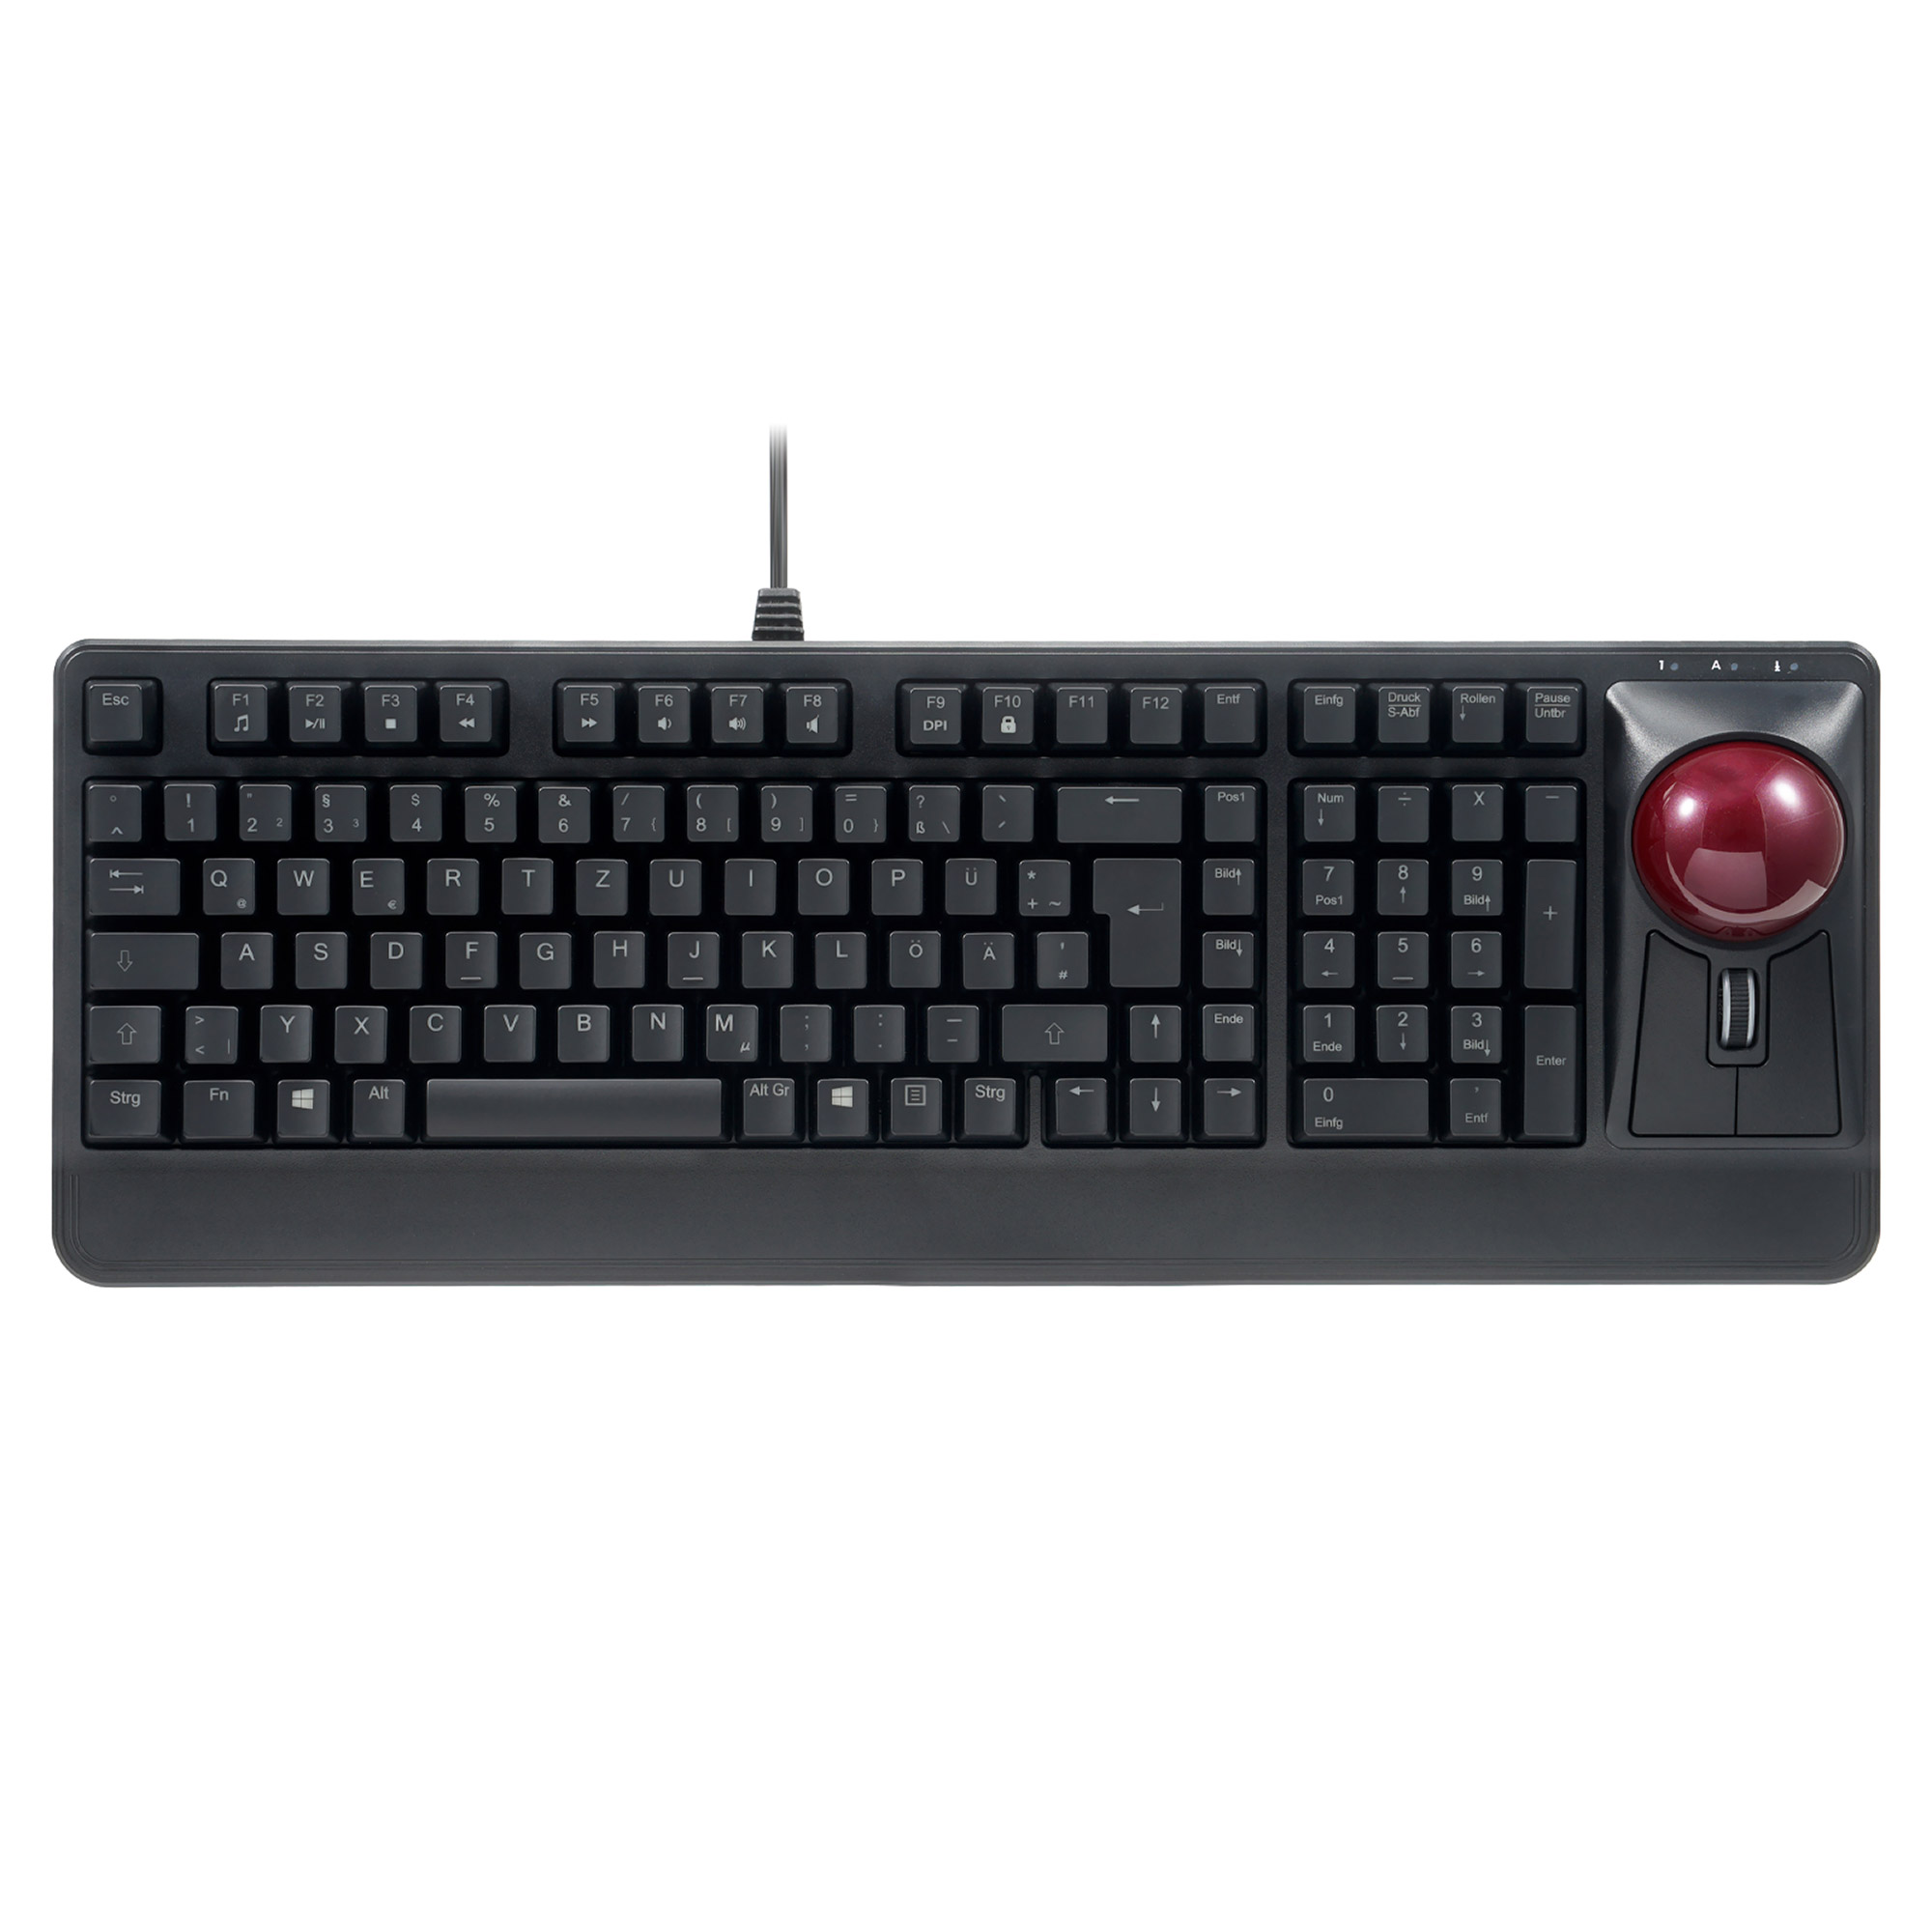 Perixx PERIBOARD-522 DE B, USB-Tastatur mit Trackball, DE Layout, schwarz